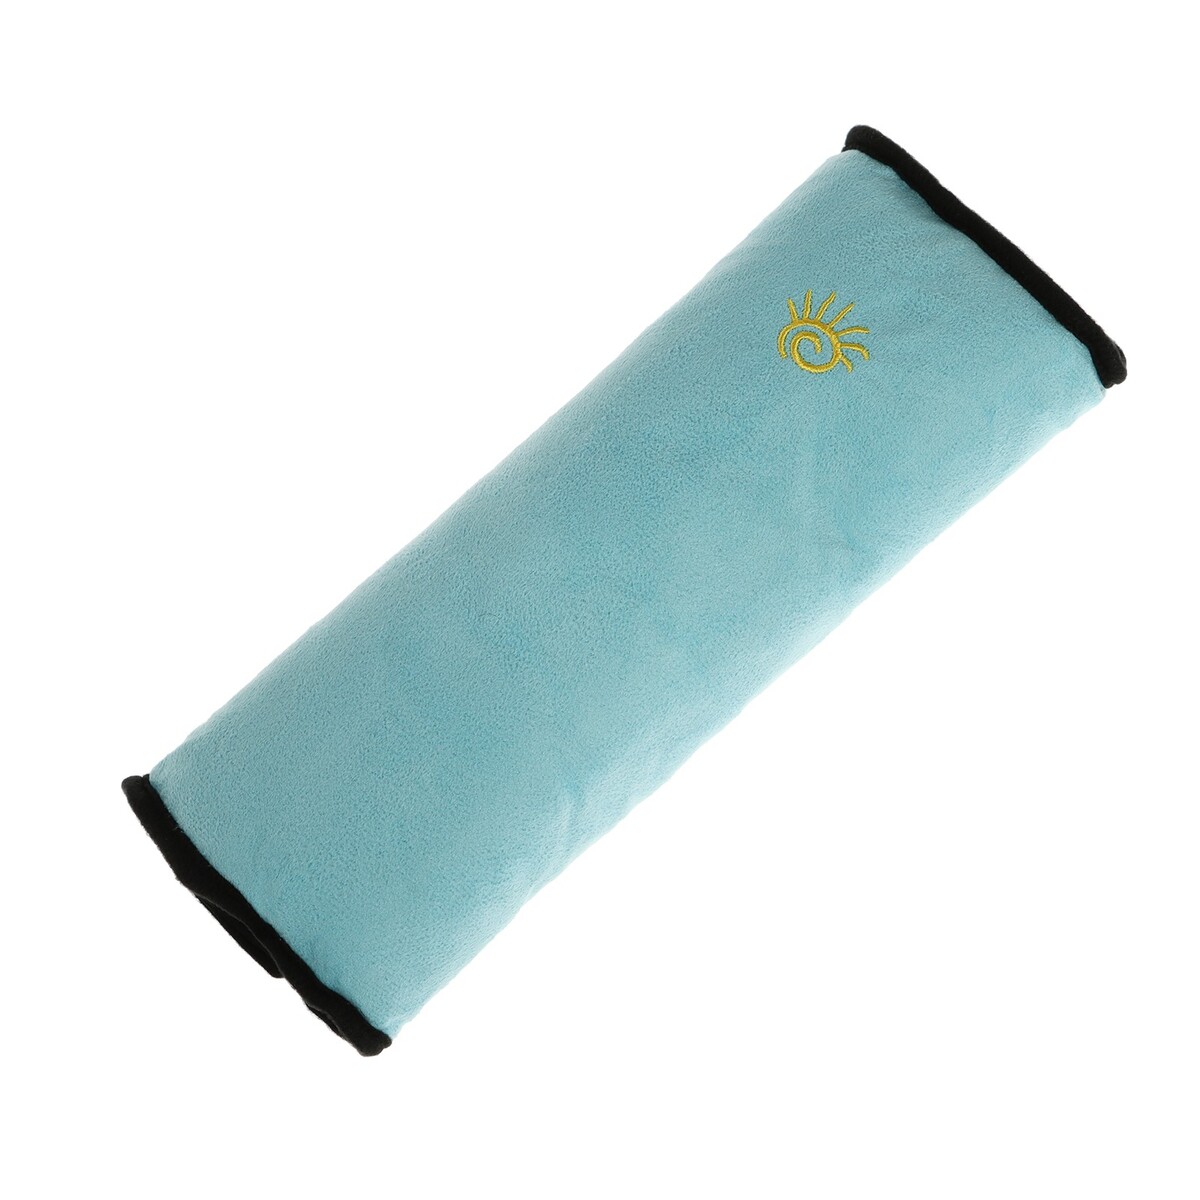 Накладная подушка на ремень безопасности, 28 см, голубая накладная подушка на ремень безопасности 28 см голубая